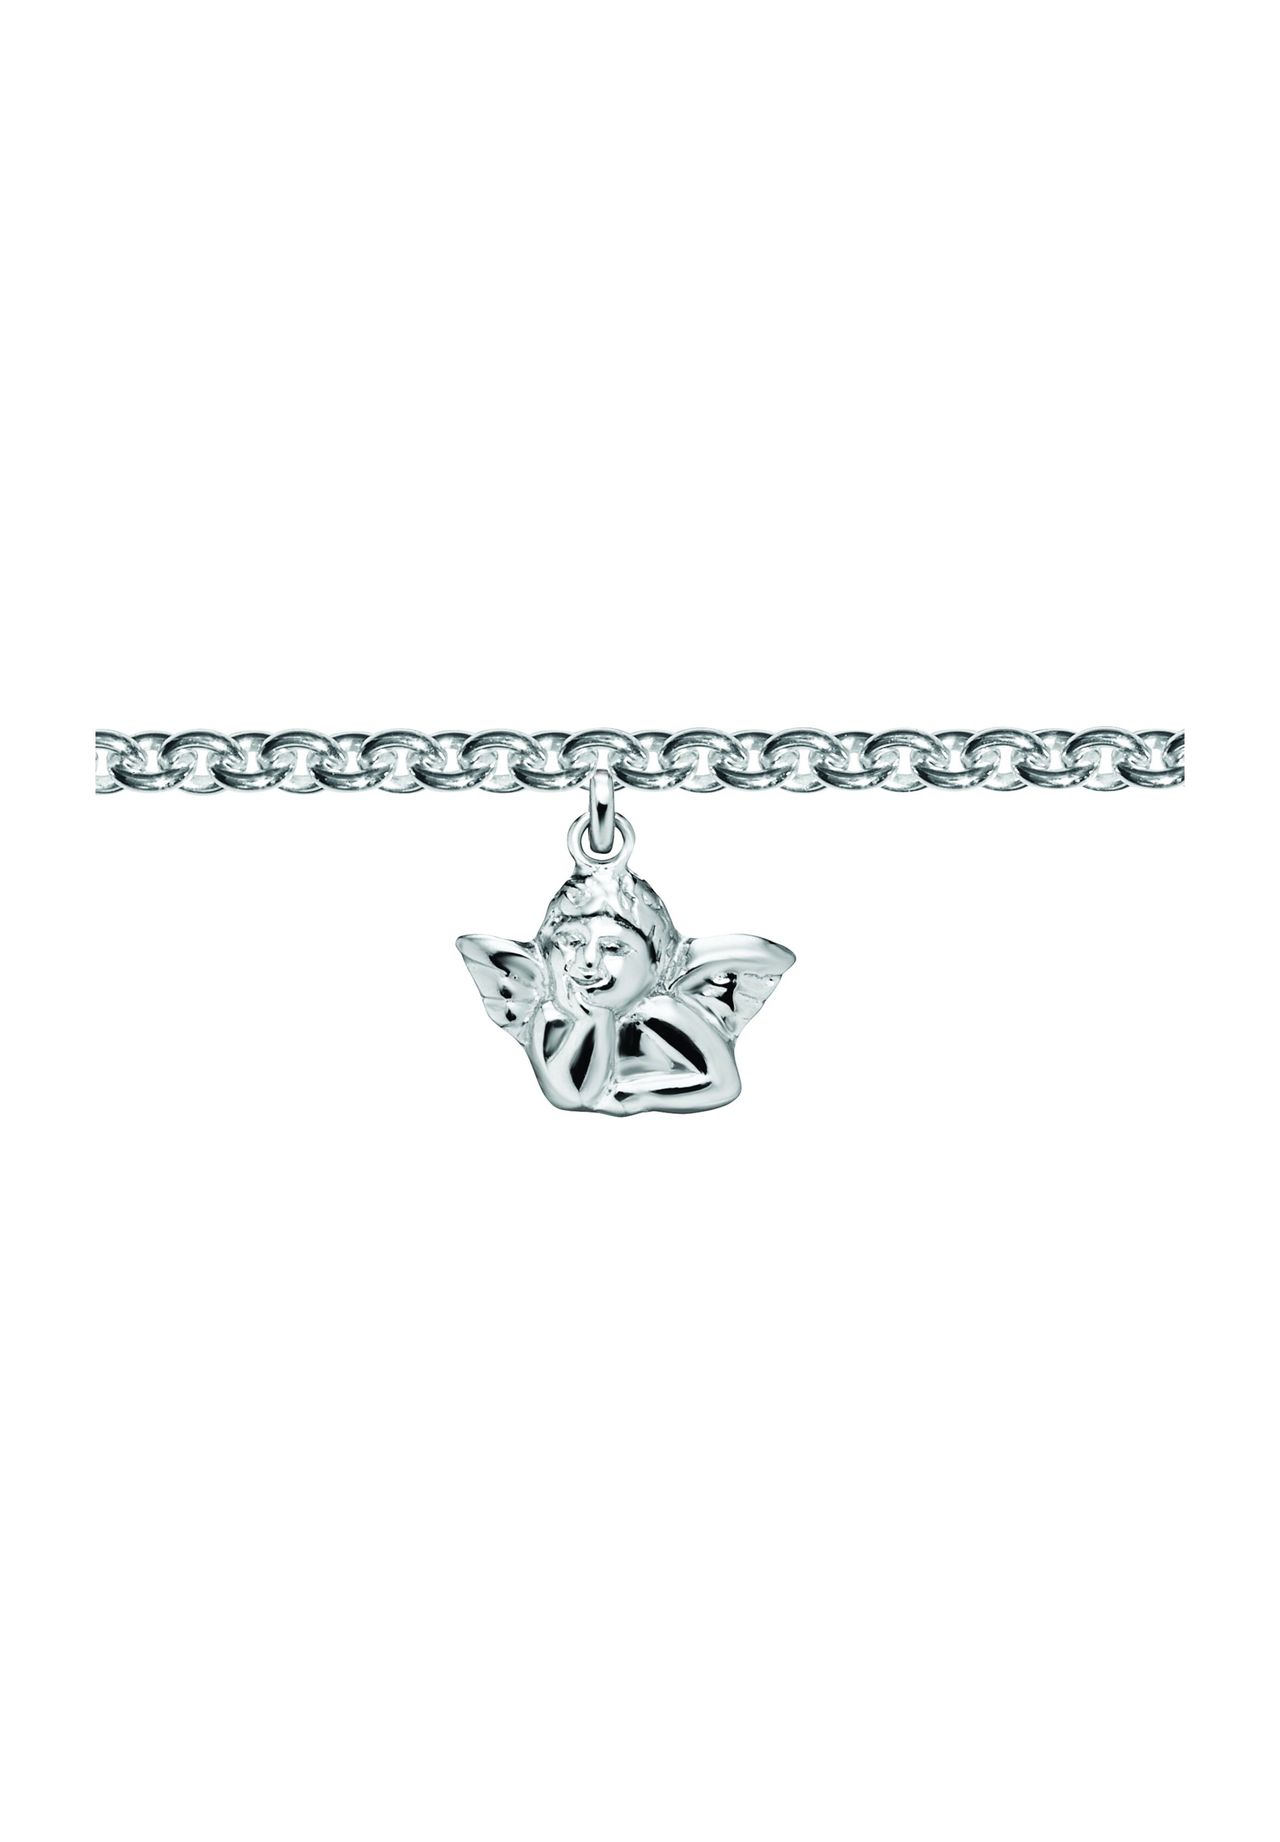 ONE ELEMENT Engel Halskette aus 925 Silber 16 cm Ø | GALERIA